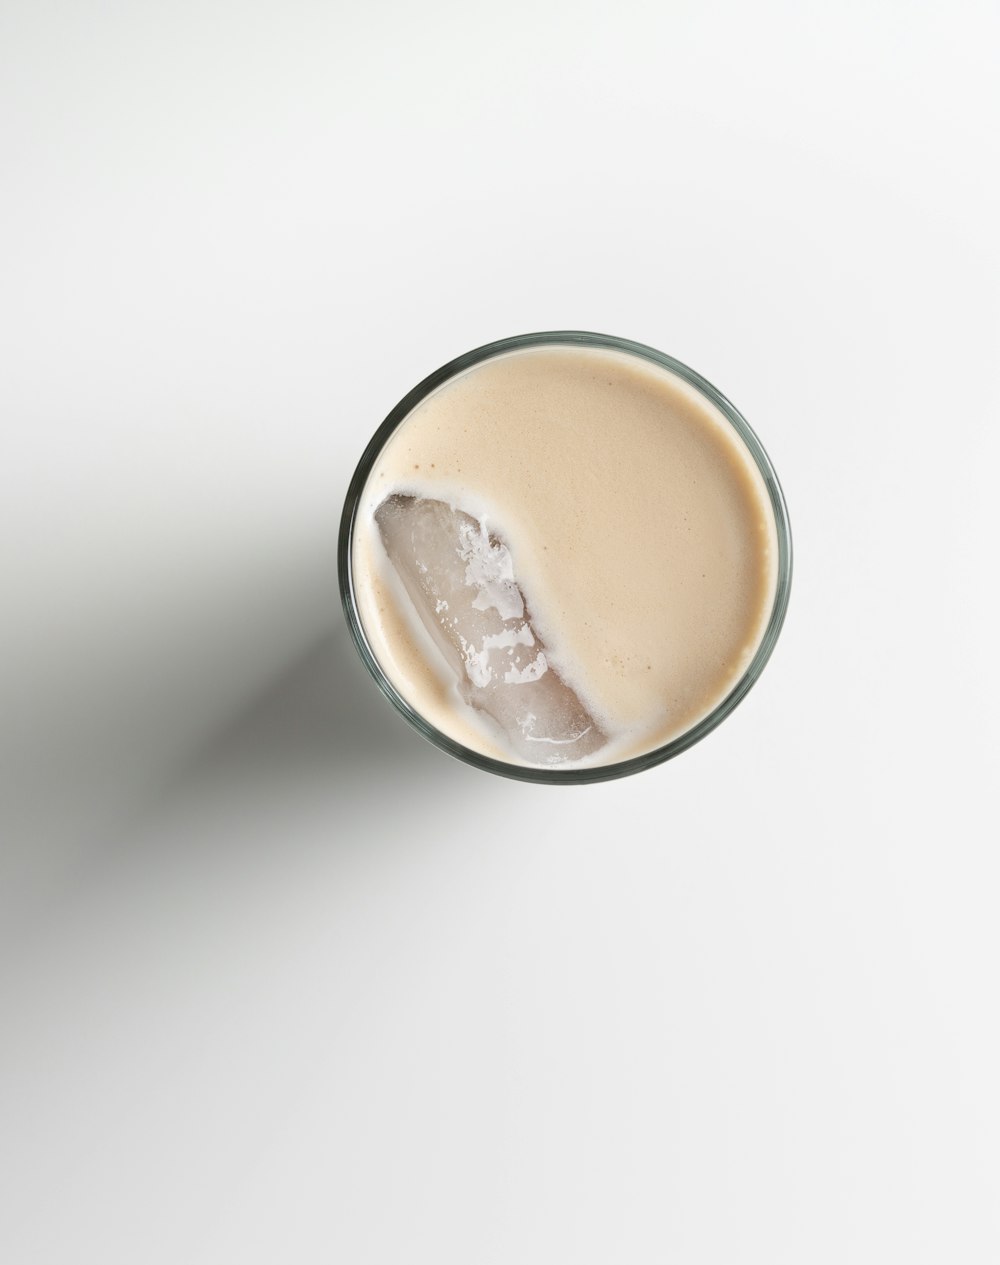 Taza de cerámica blanca con líquido marrón